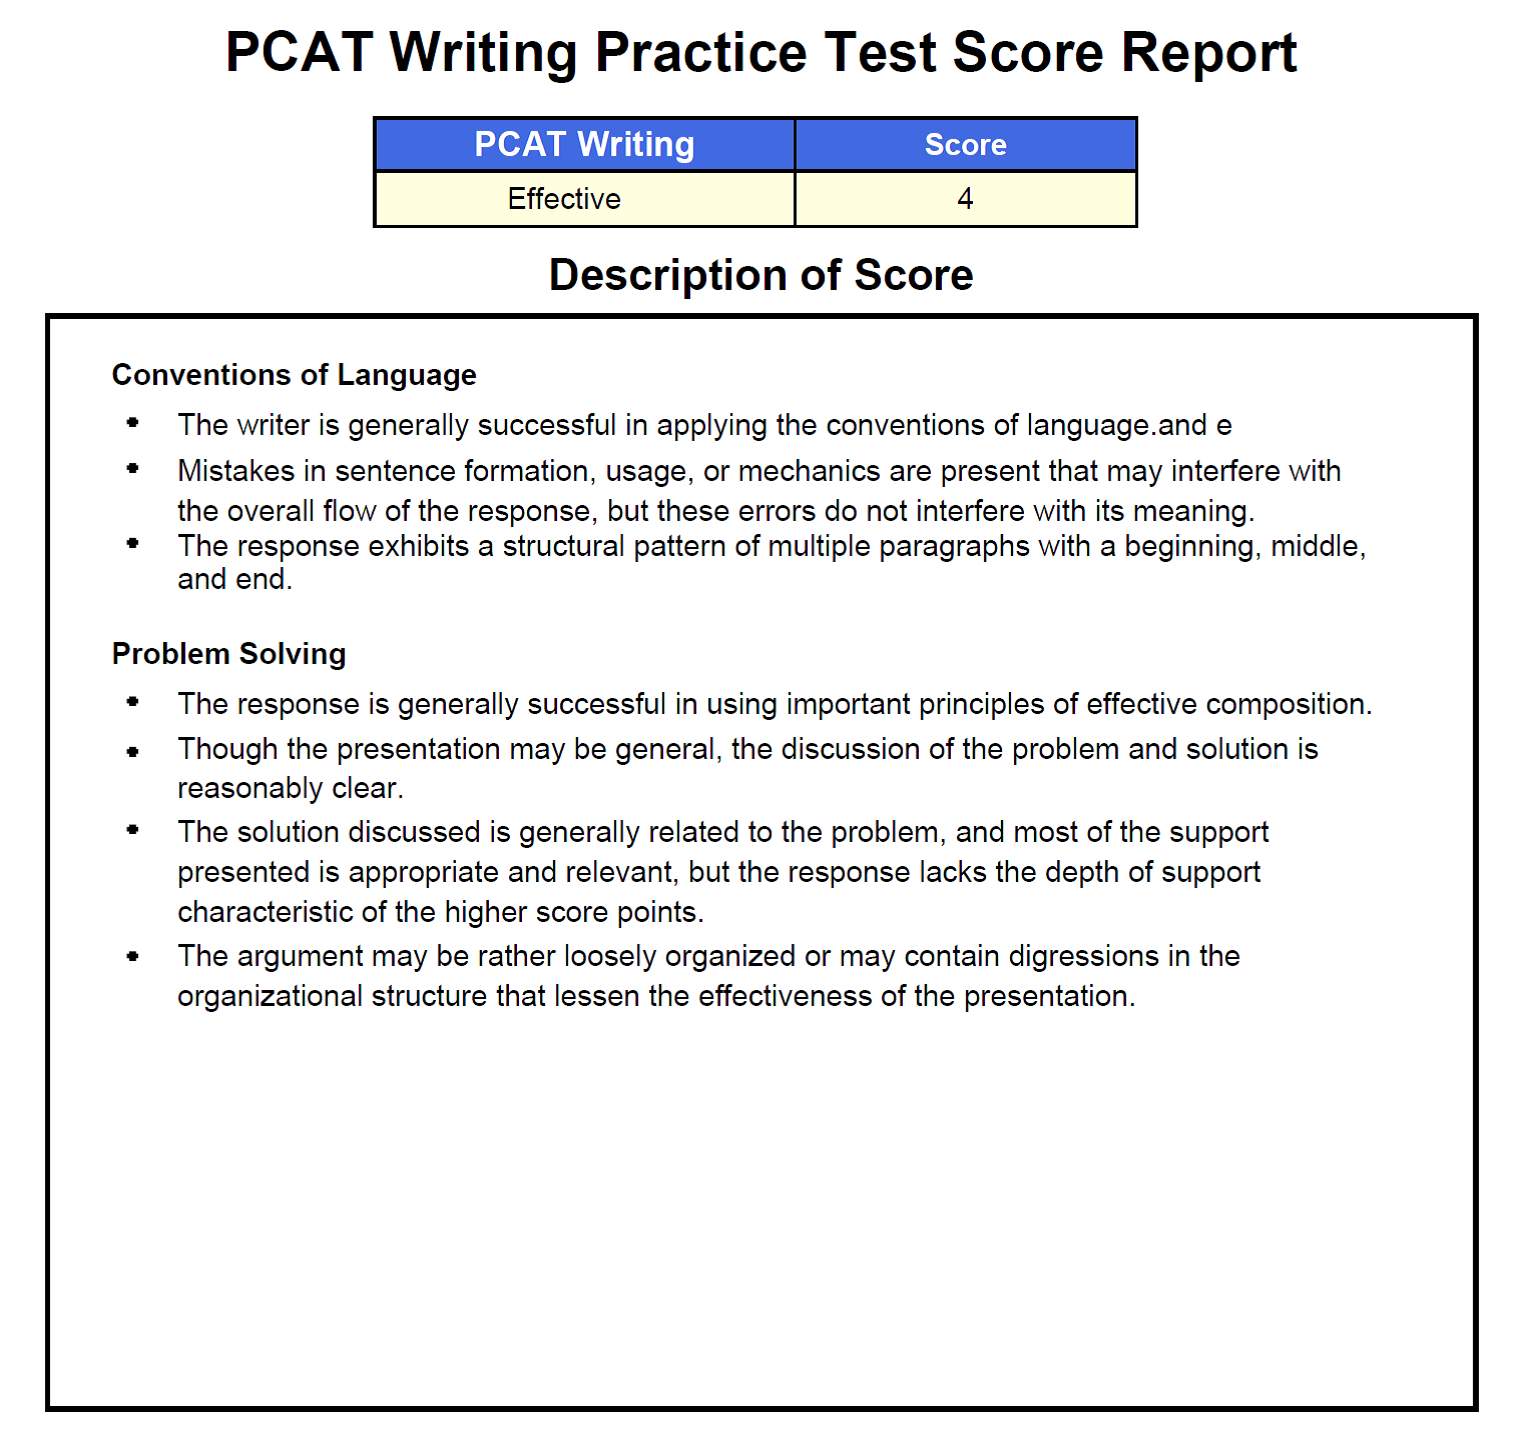 pcat practice exam